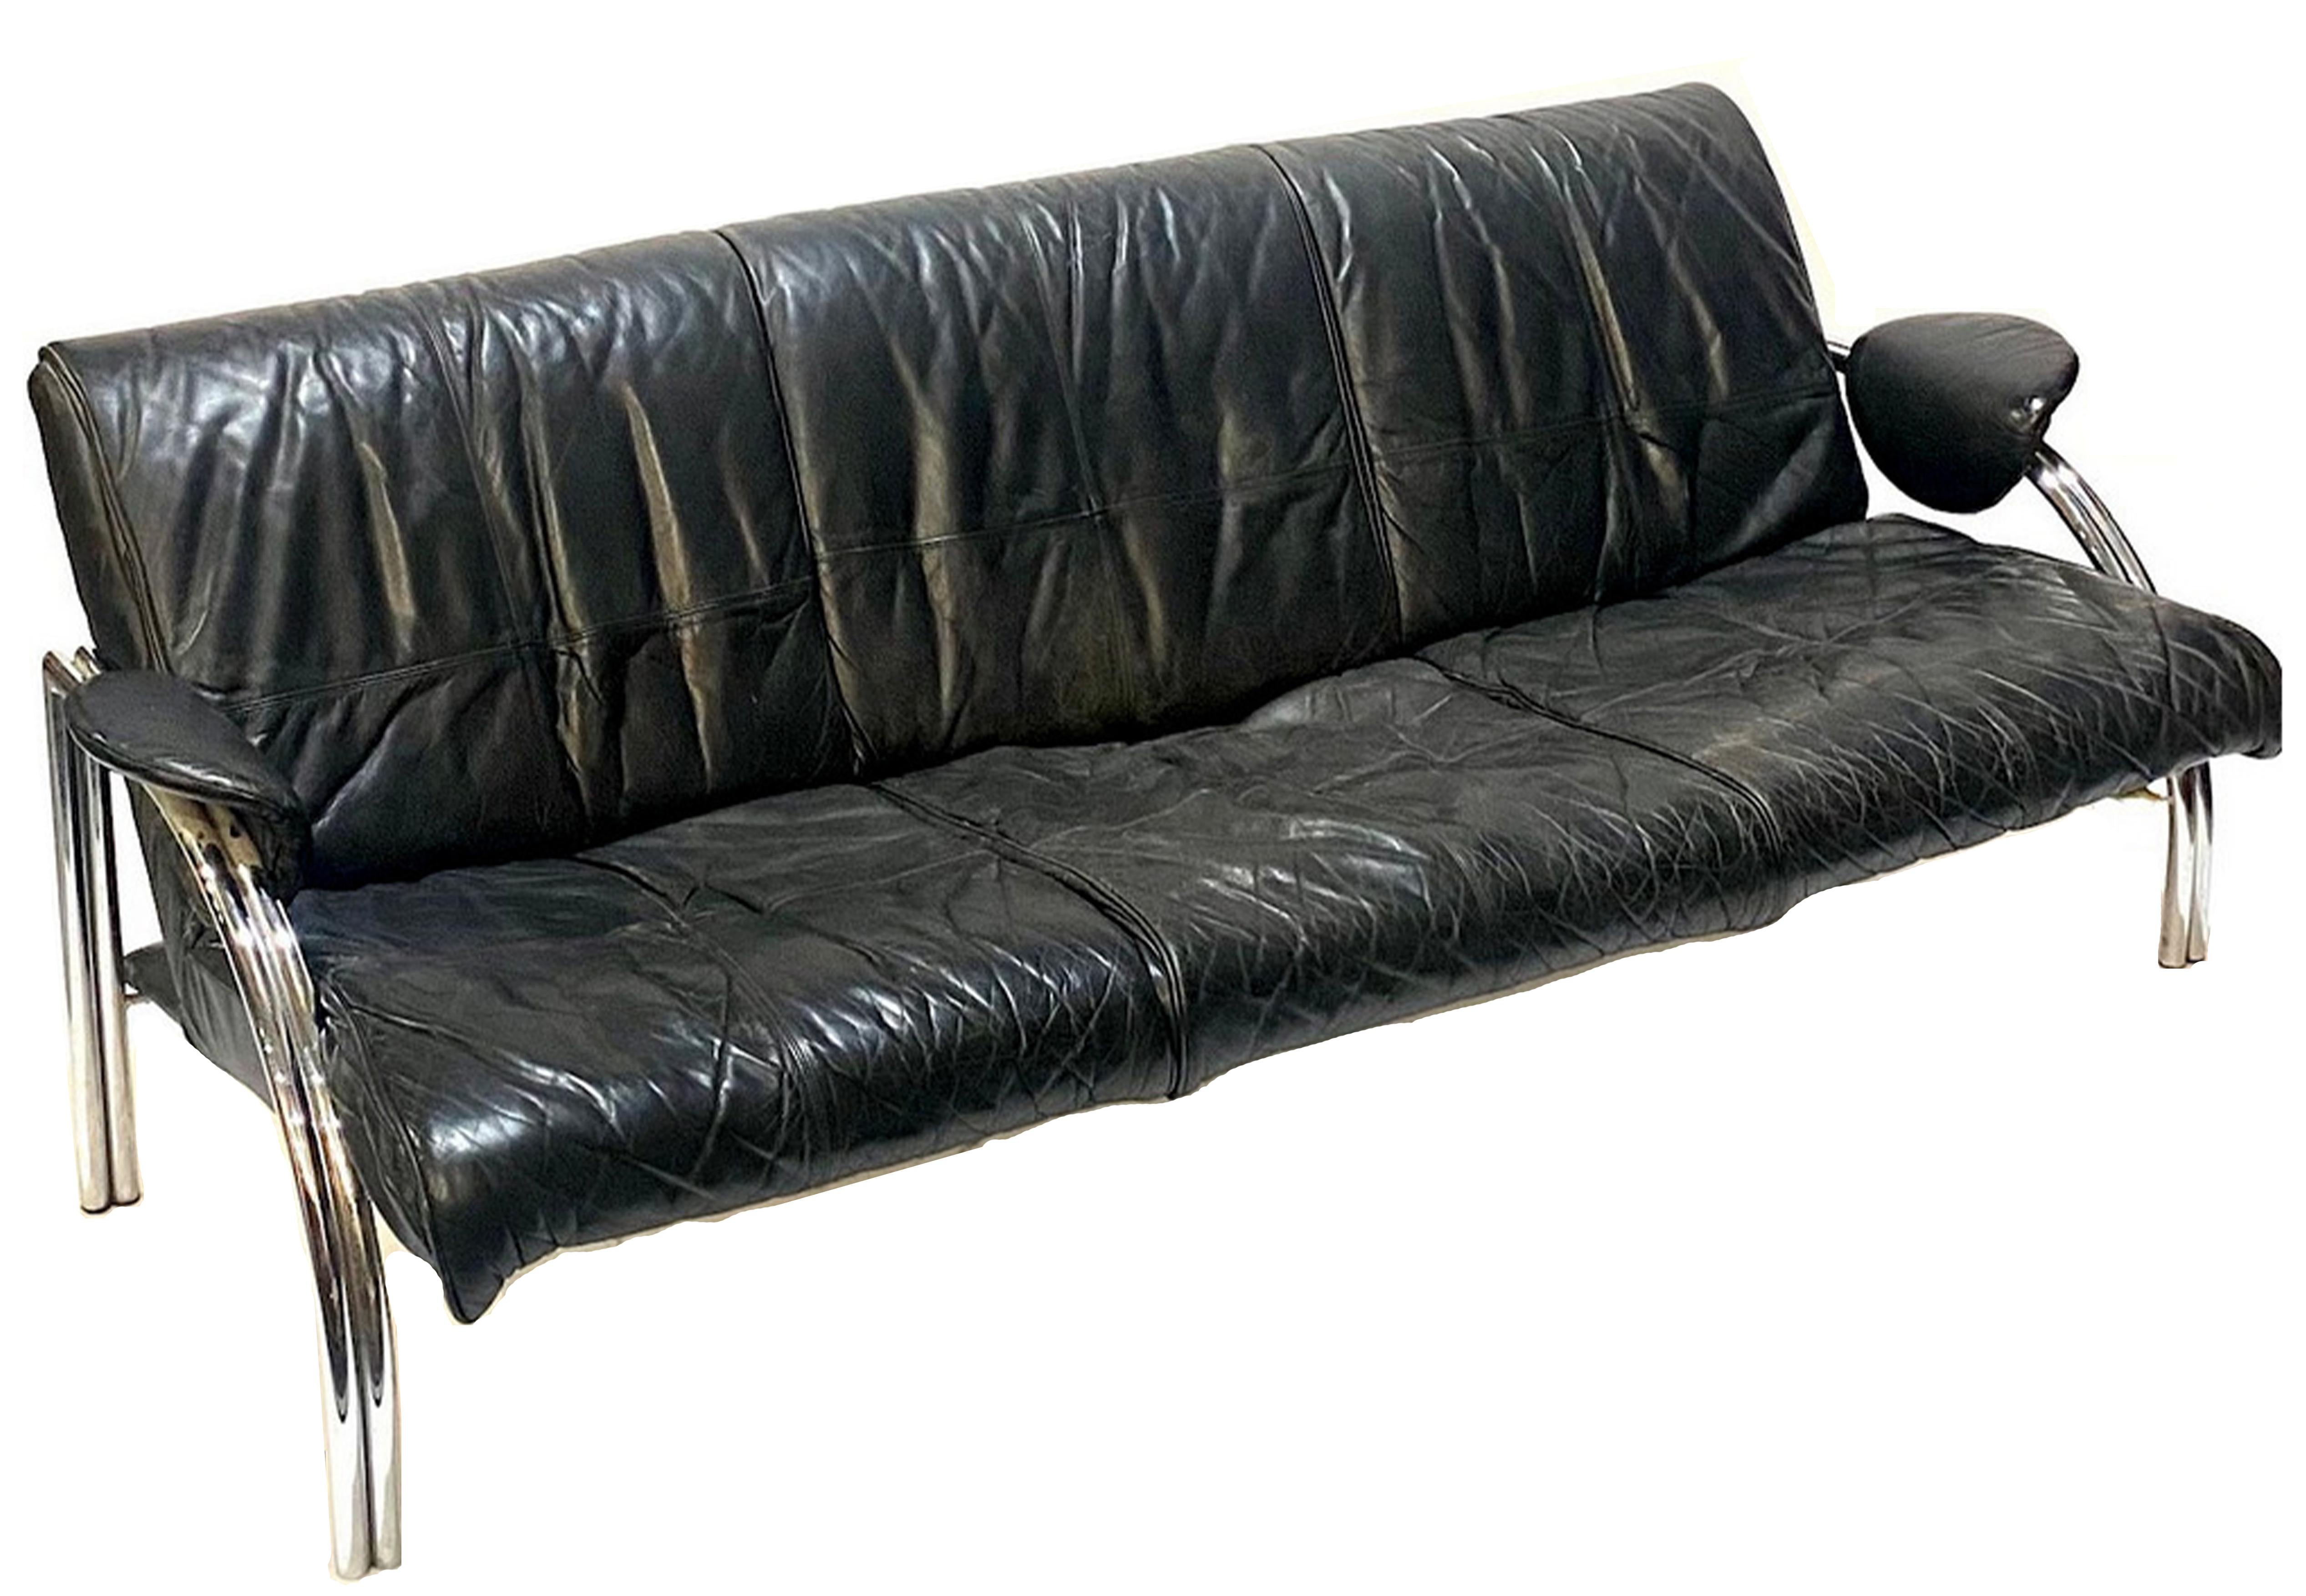 Rare canapé trois places Steele & Co Art Deco à armature en cuir noir et acier tubulaire chromé des années 1970, conçu par Mark Lawson

Images supplémentaires de croquis originaux, non fournis avec le canapé. 